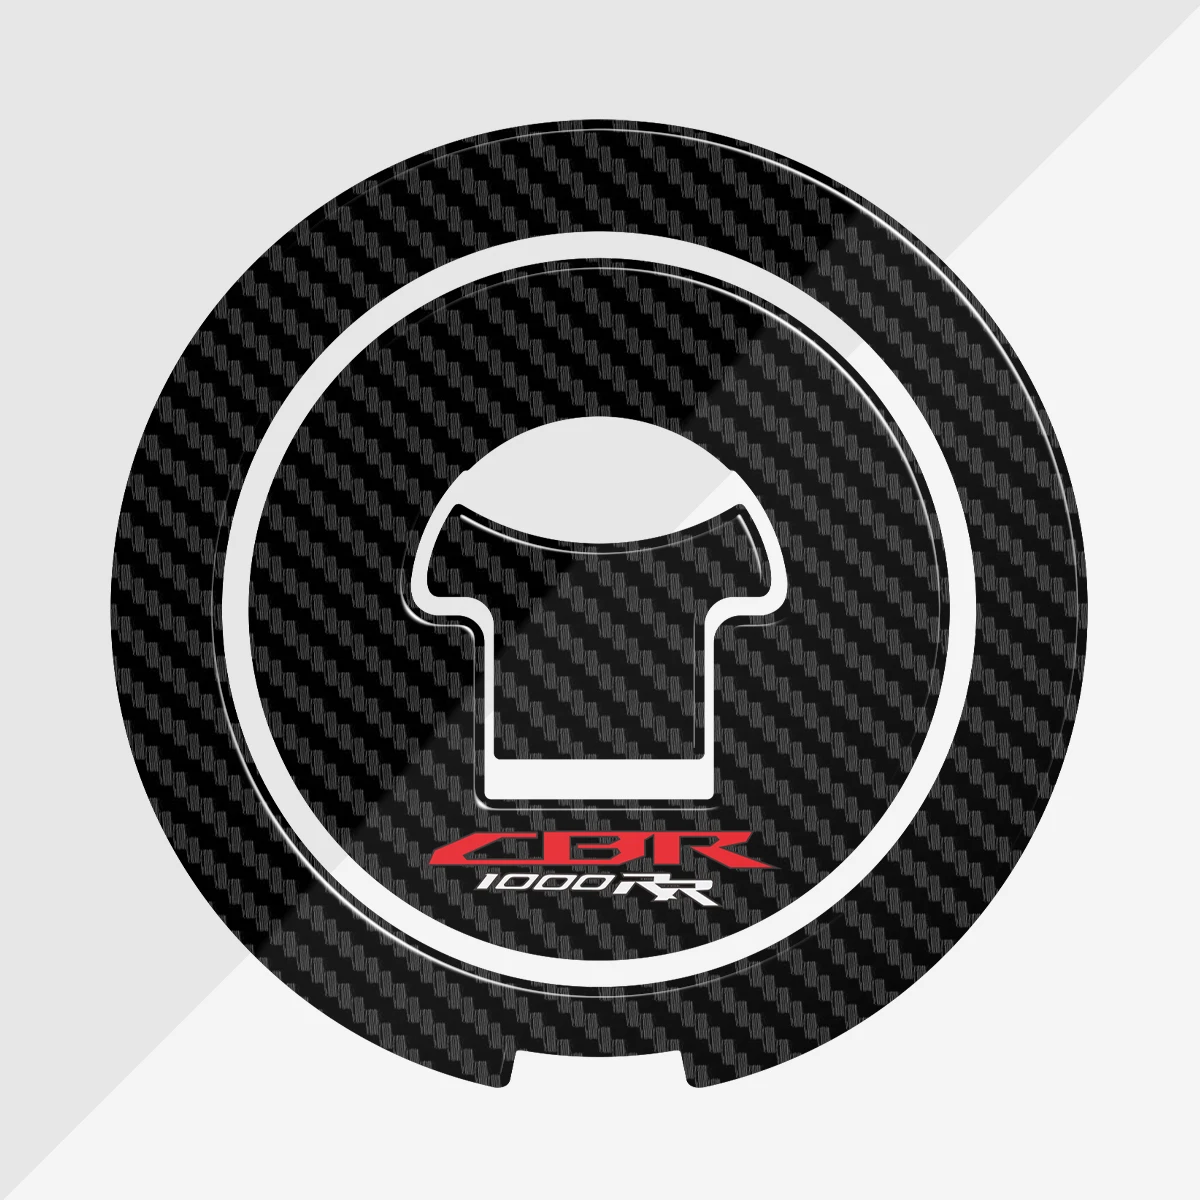 3D Carbon Fiber Tank Pad Gas Cap Decal Protector Cover For Honda CBR1000RR CBR 1000RR 2004-2013 2012 2011 2010 2009 2008 2007